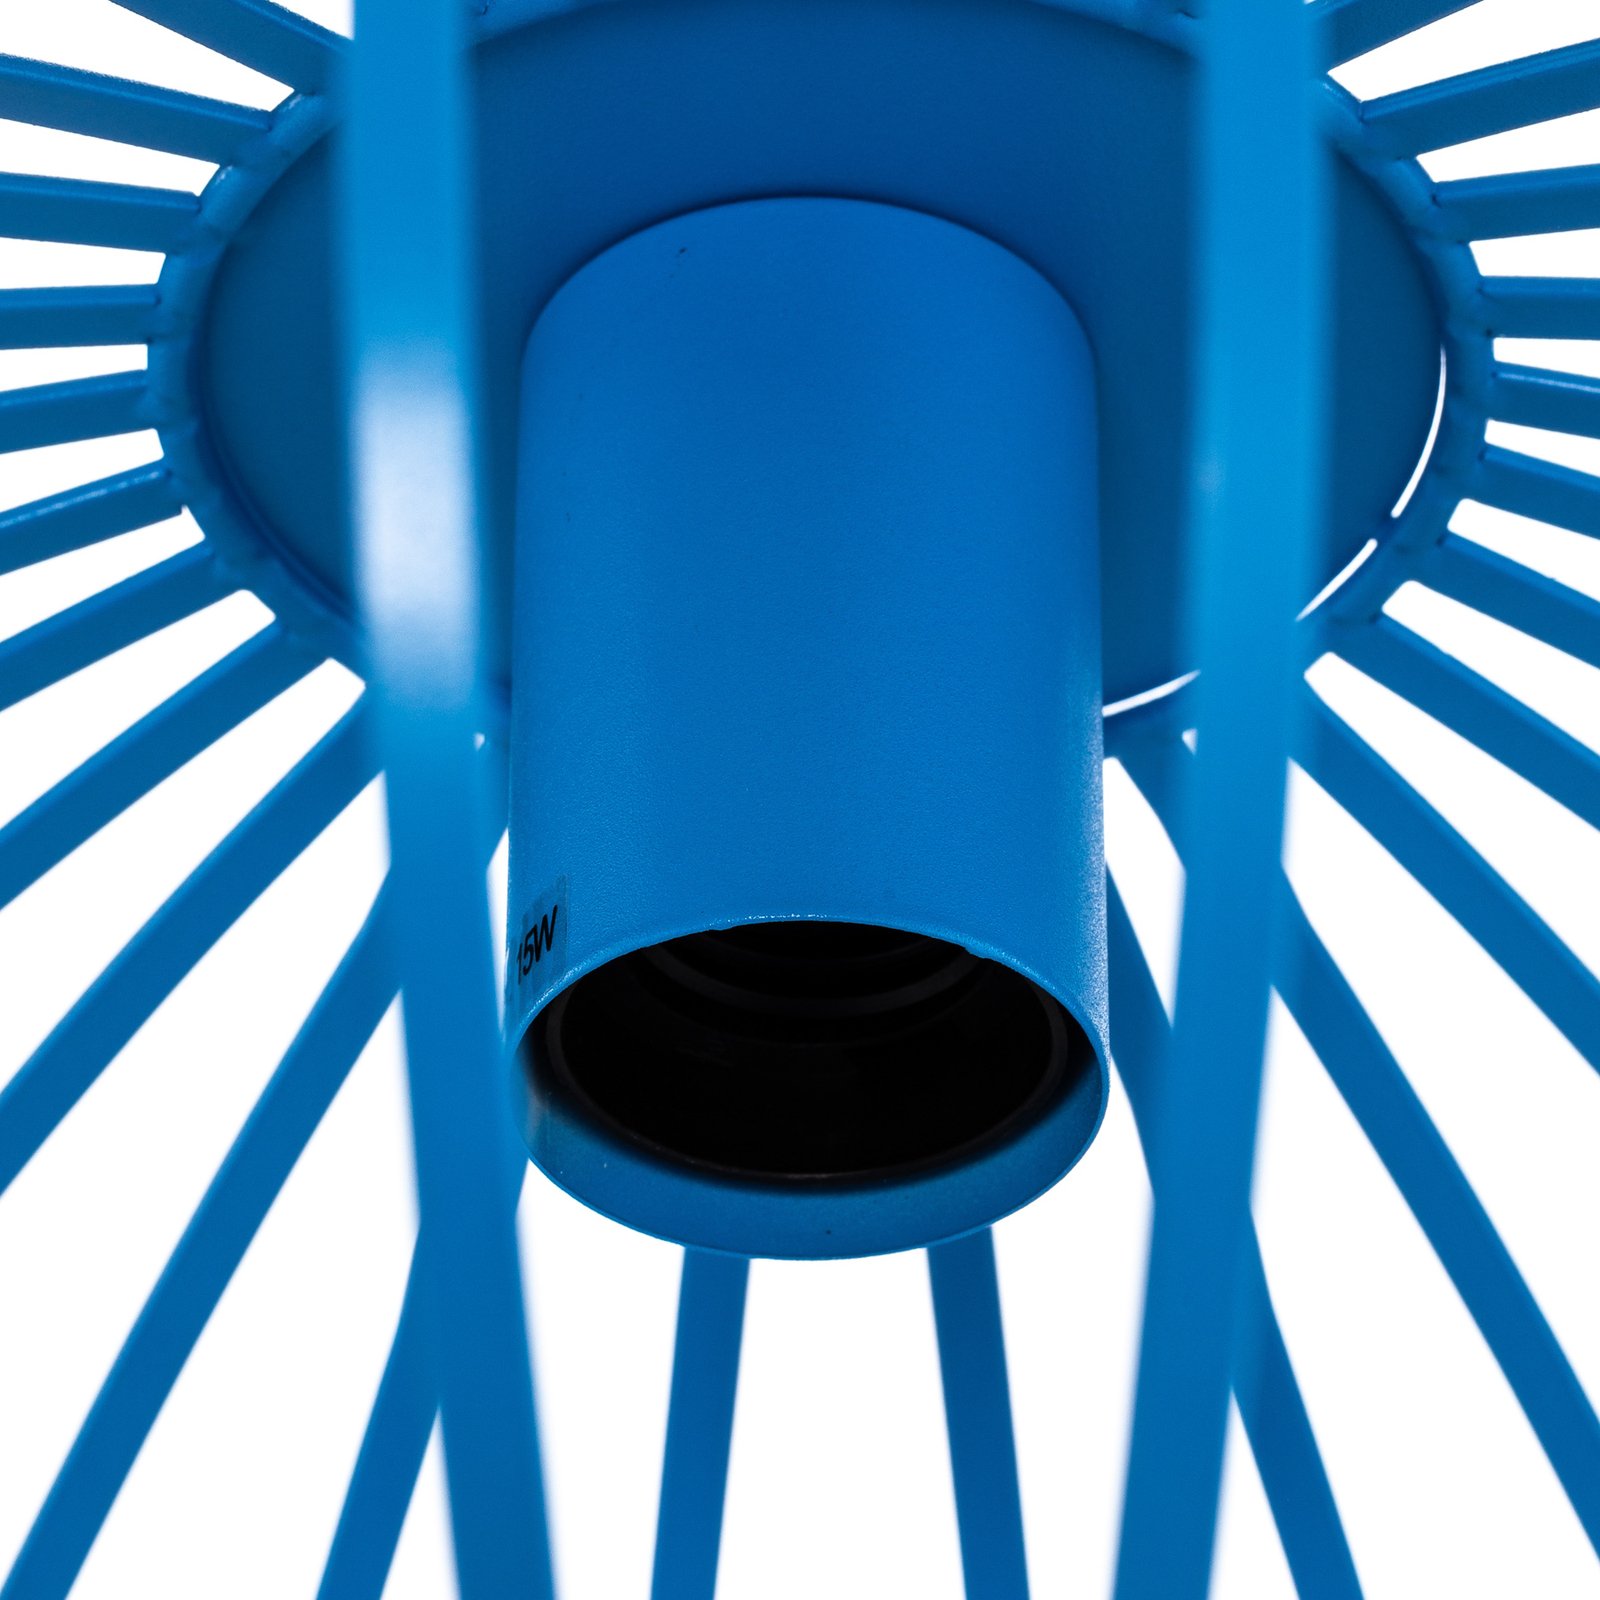 Lindby Maivi závěsné světlo kovová klec modrá 40cm